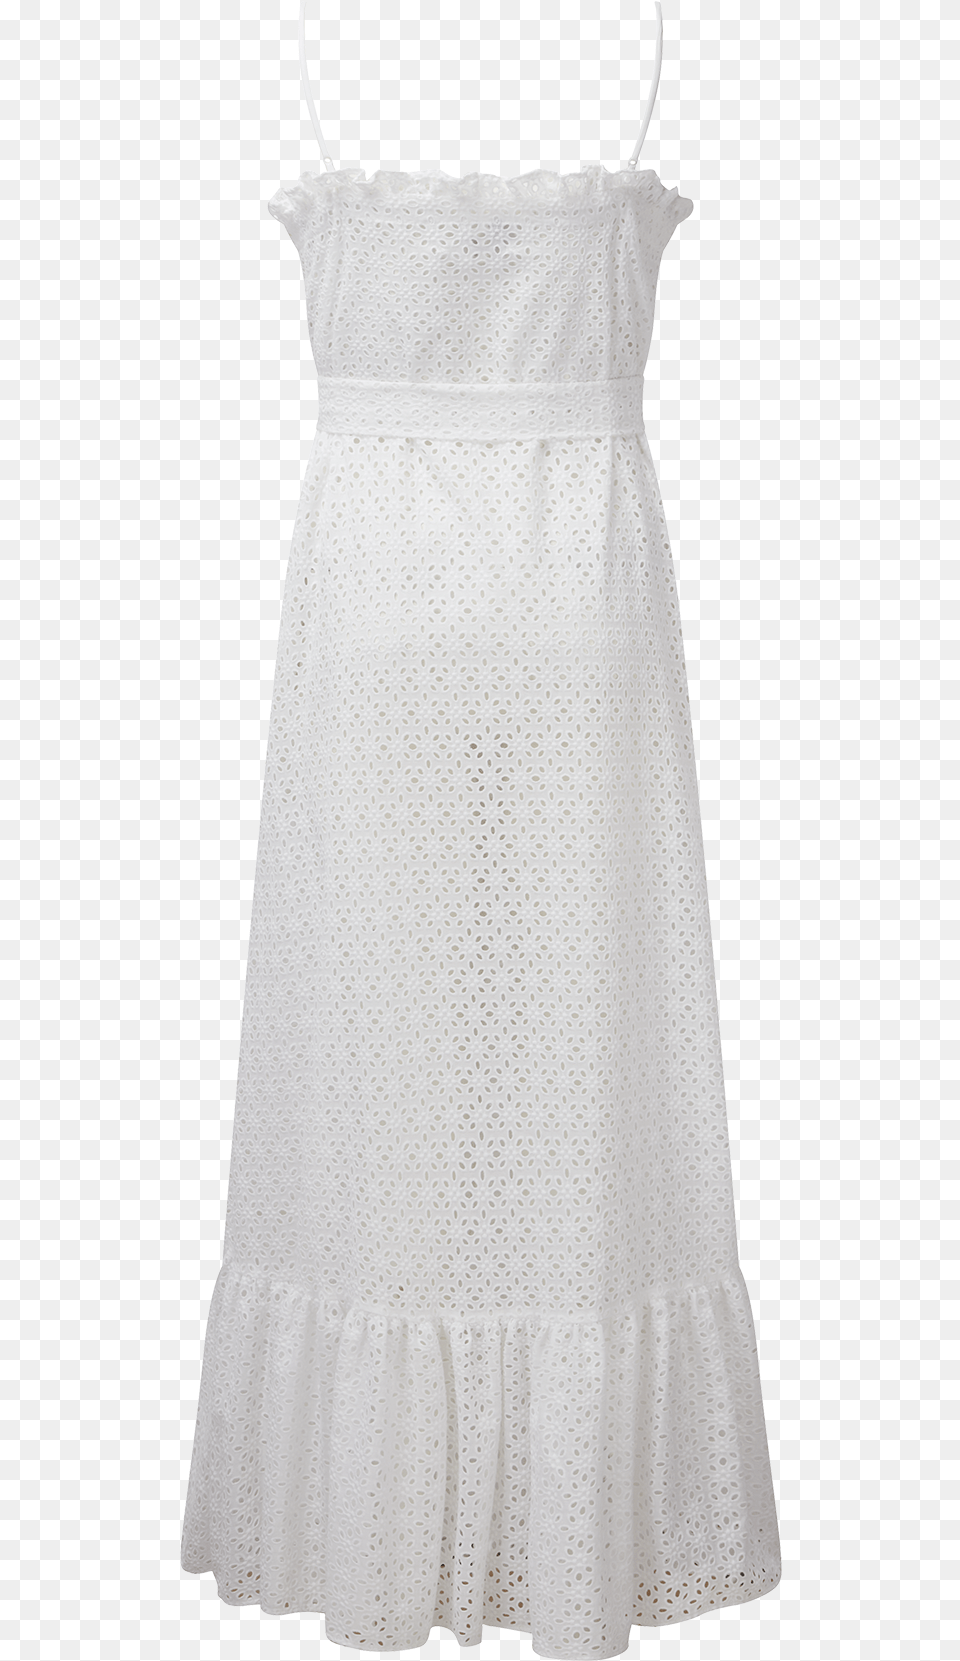 White Eyelet Ruffle Slip Dress A Line, Clothing, Blouse, Child, Female Png Image